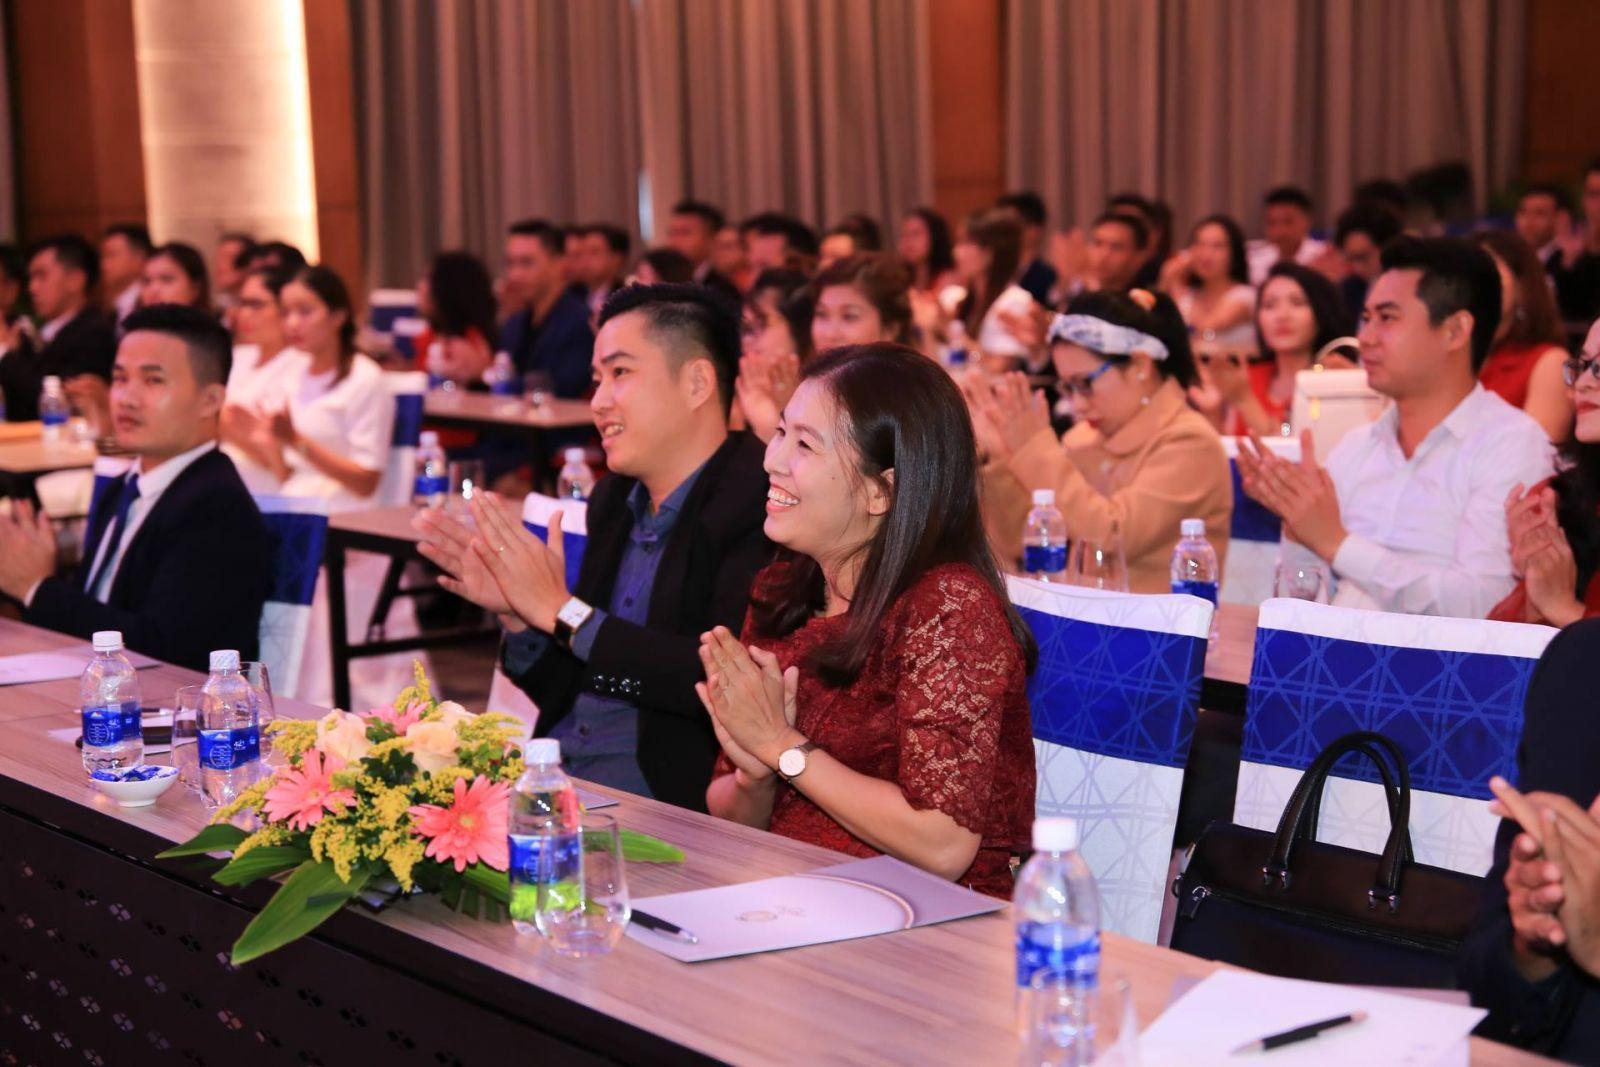 CHƯƠNG TRÌNH “TỔNG KẾT 6 THÁNG CUỐI NĂM 2018” VỚI CHỦ ĐỀ : “CHẶNG ĐƯỜNG GIỮ LỬA” - Viet Nam Smart City